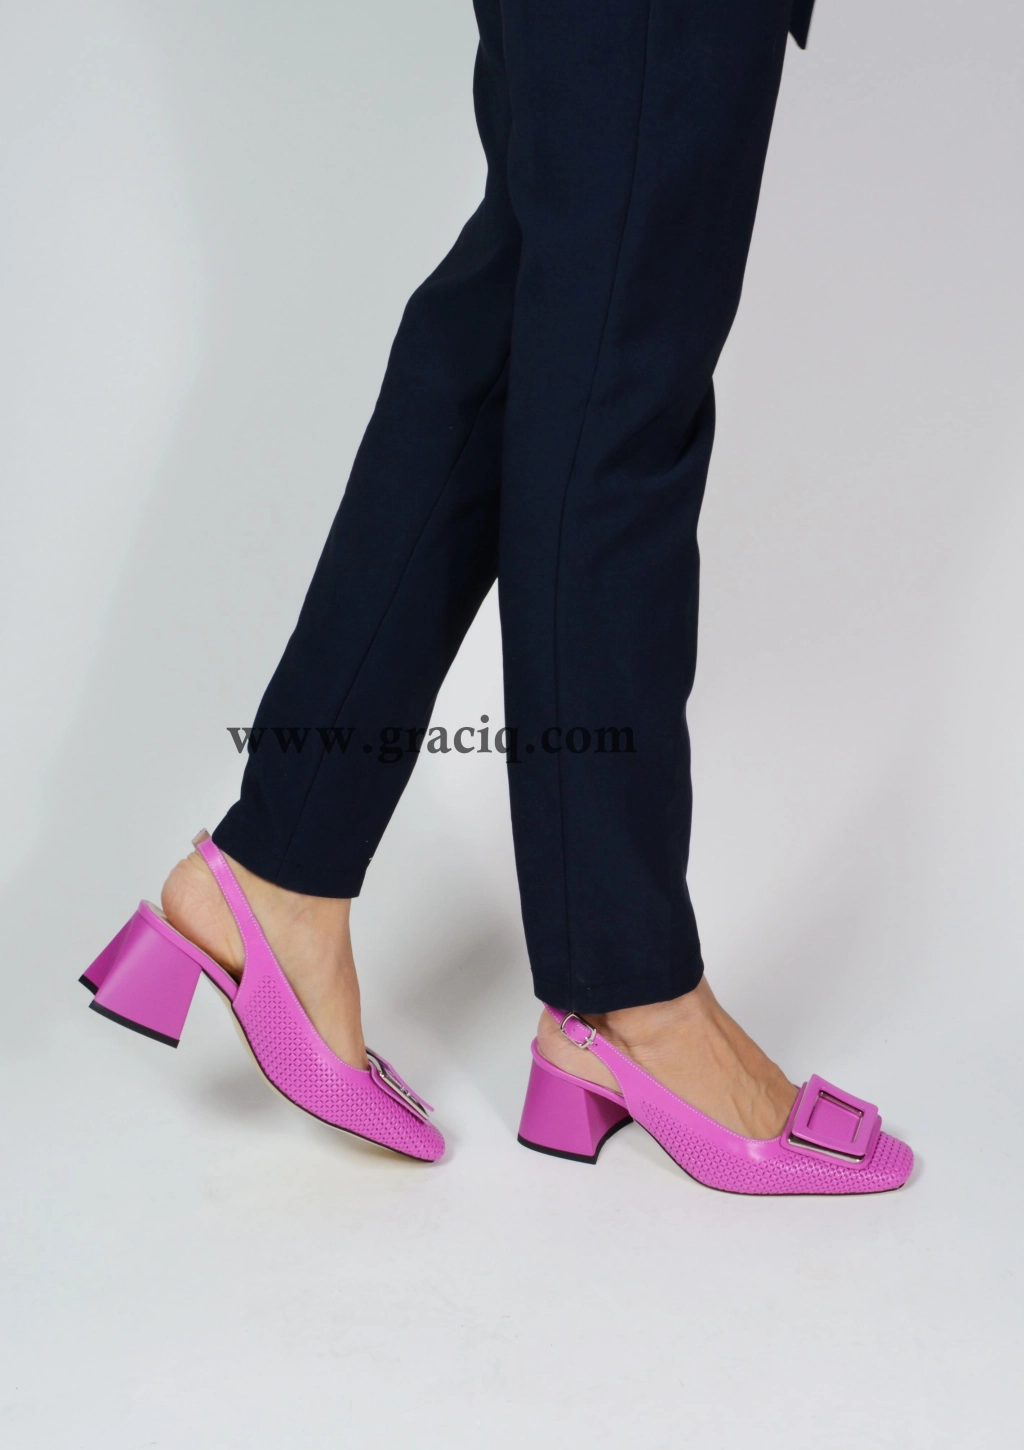 Дамски елегантни сандали с декоративна плочка в цикламена кожа